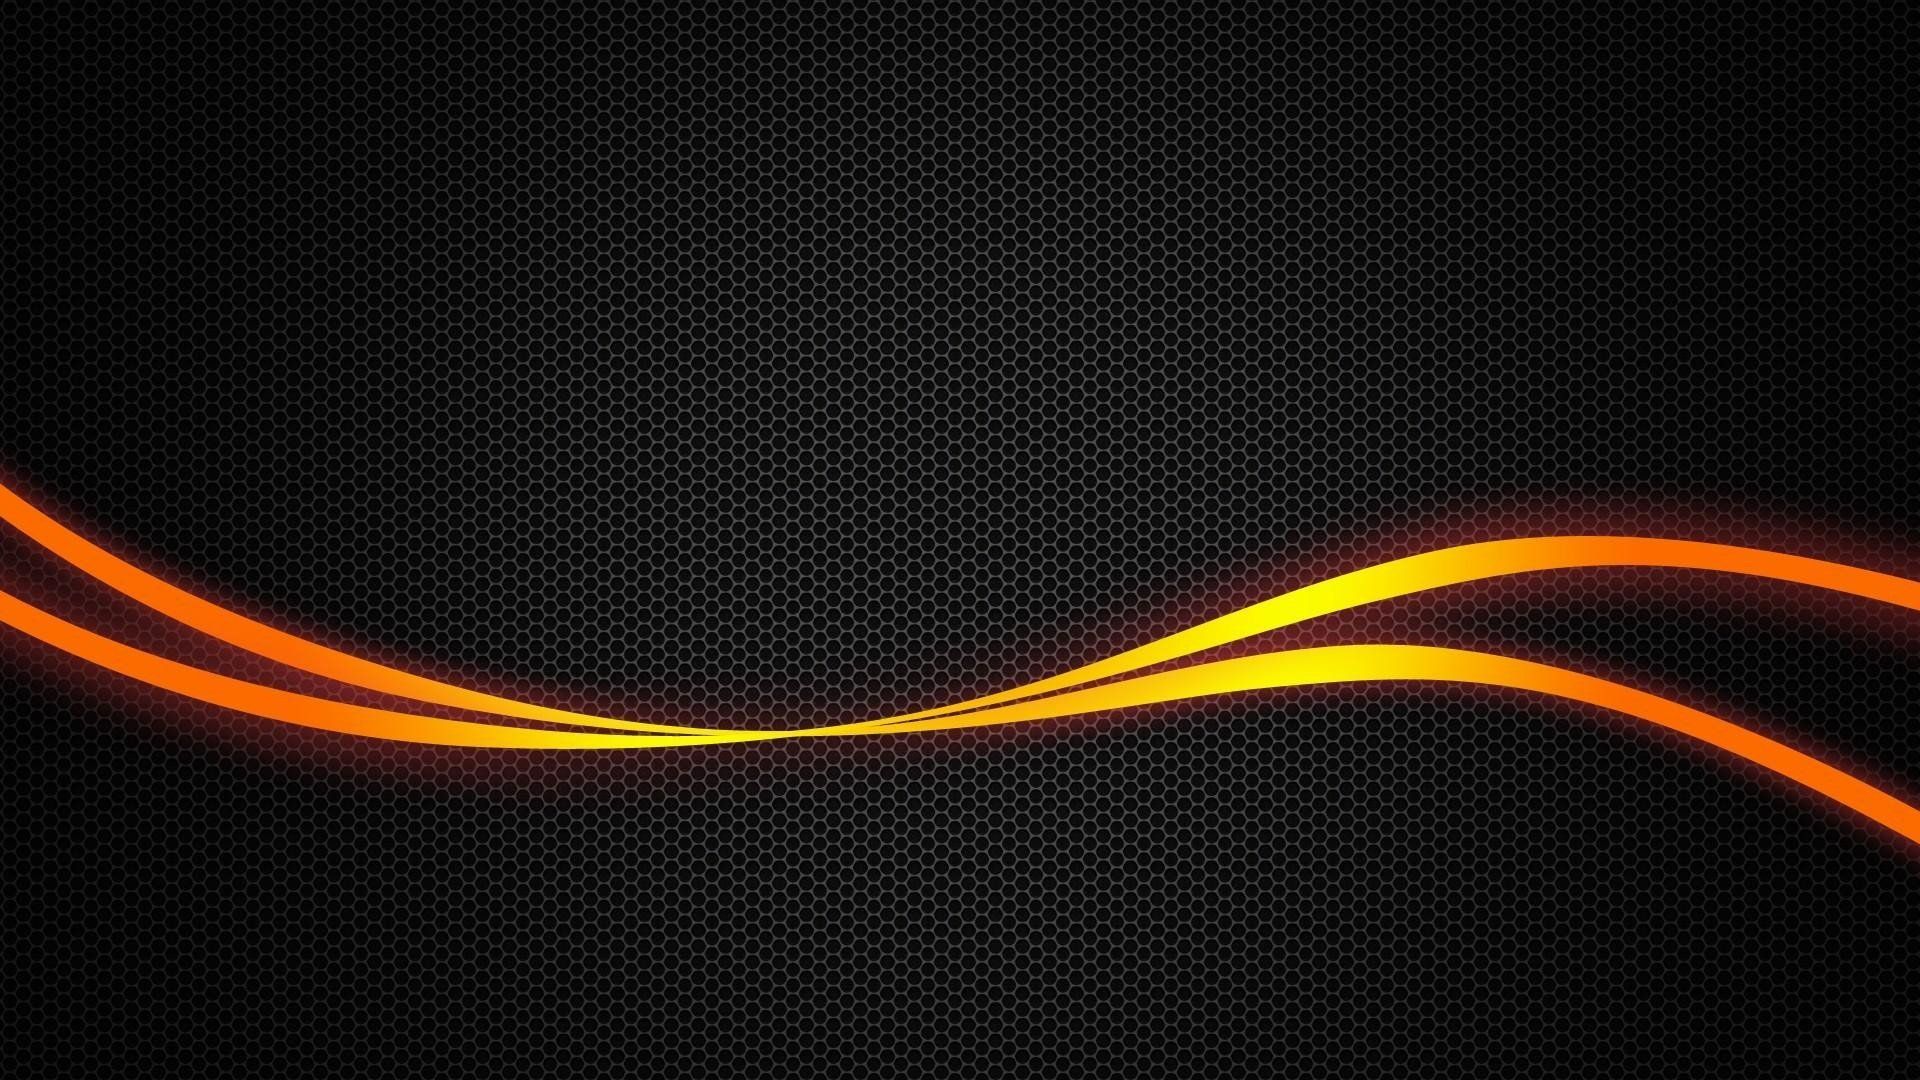 Free download 74 Orange Black Wallpaper [1920x1080] for your Desktop, Mobile & Tablet. Explore Orange And Black Wallpaper. Black And Orange Background, Orange And Black Wallpaper, Black and Orange Wallpaper